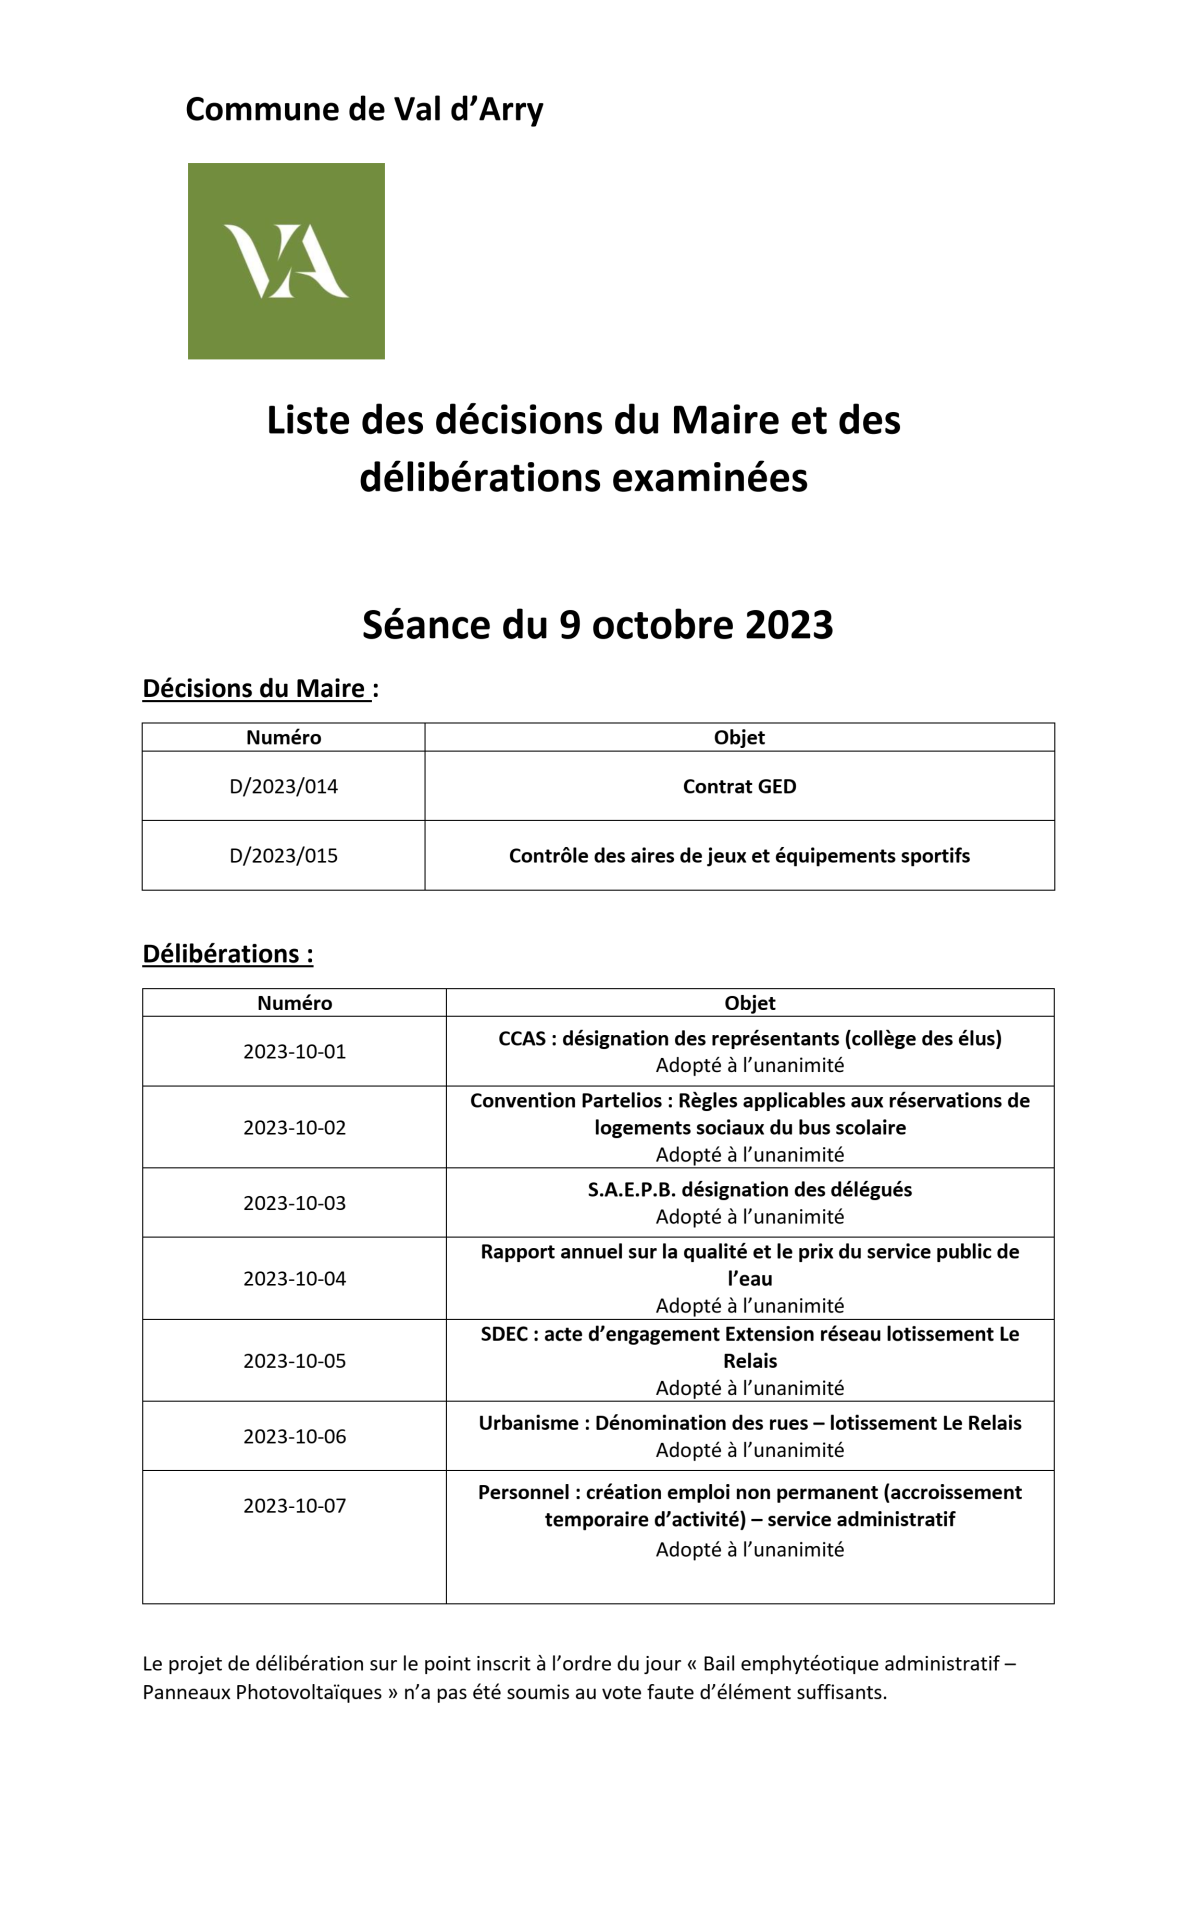 Liste des deliberations du conseil du 09 octobre 2023